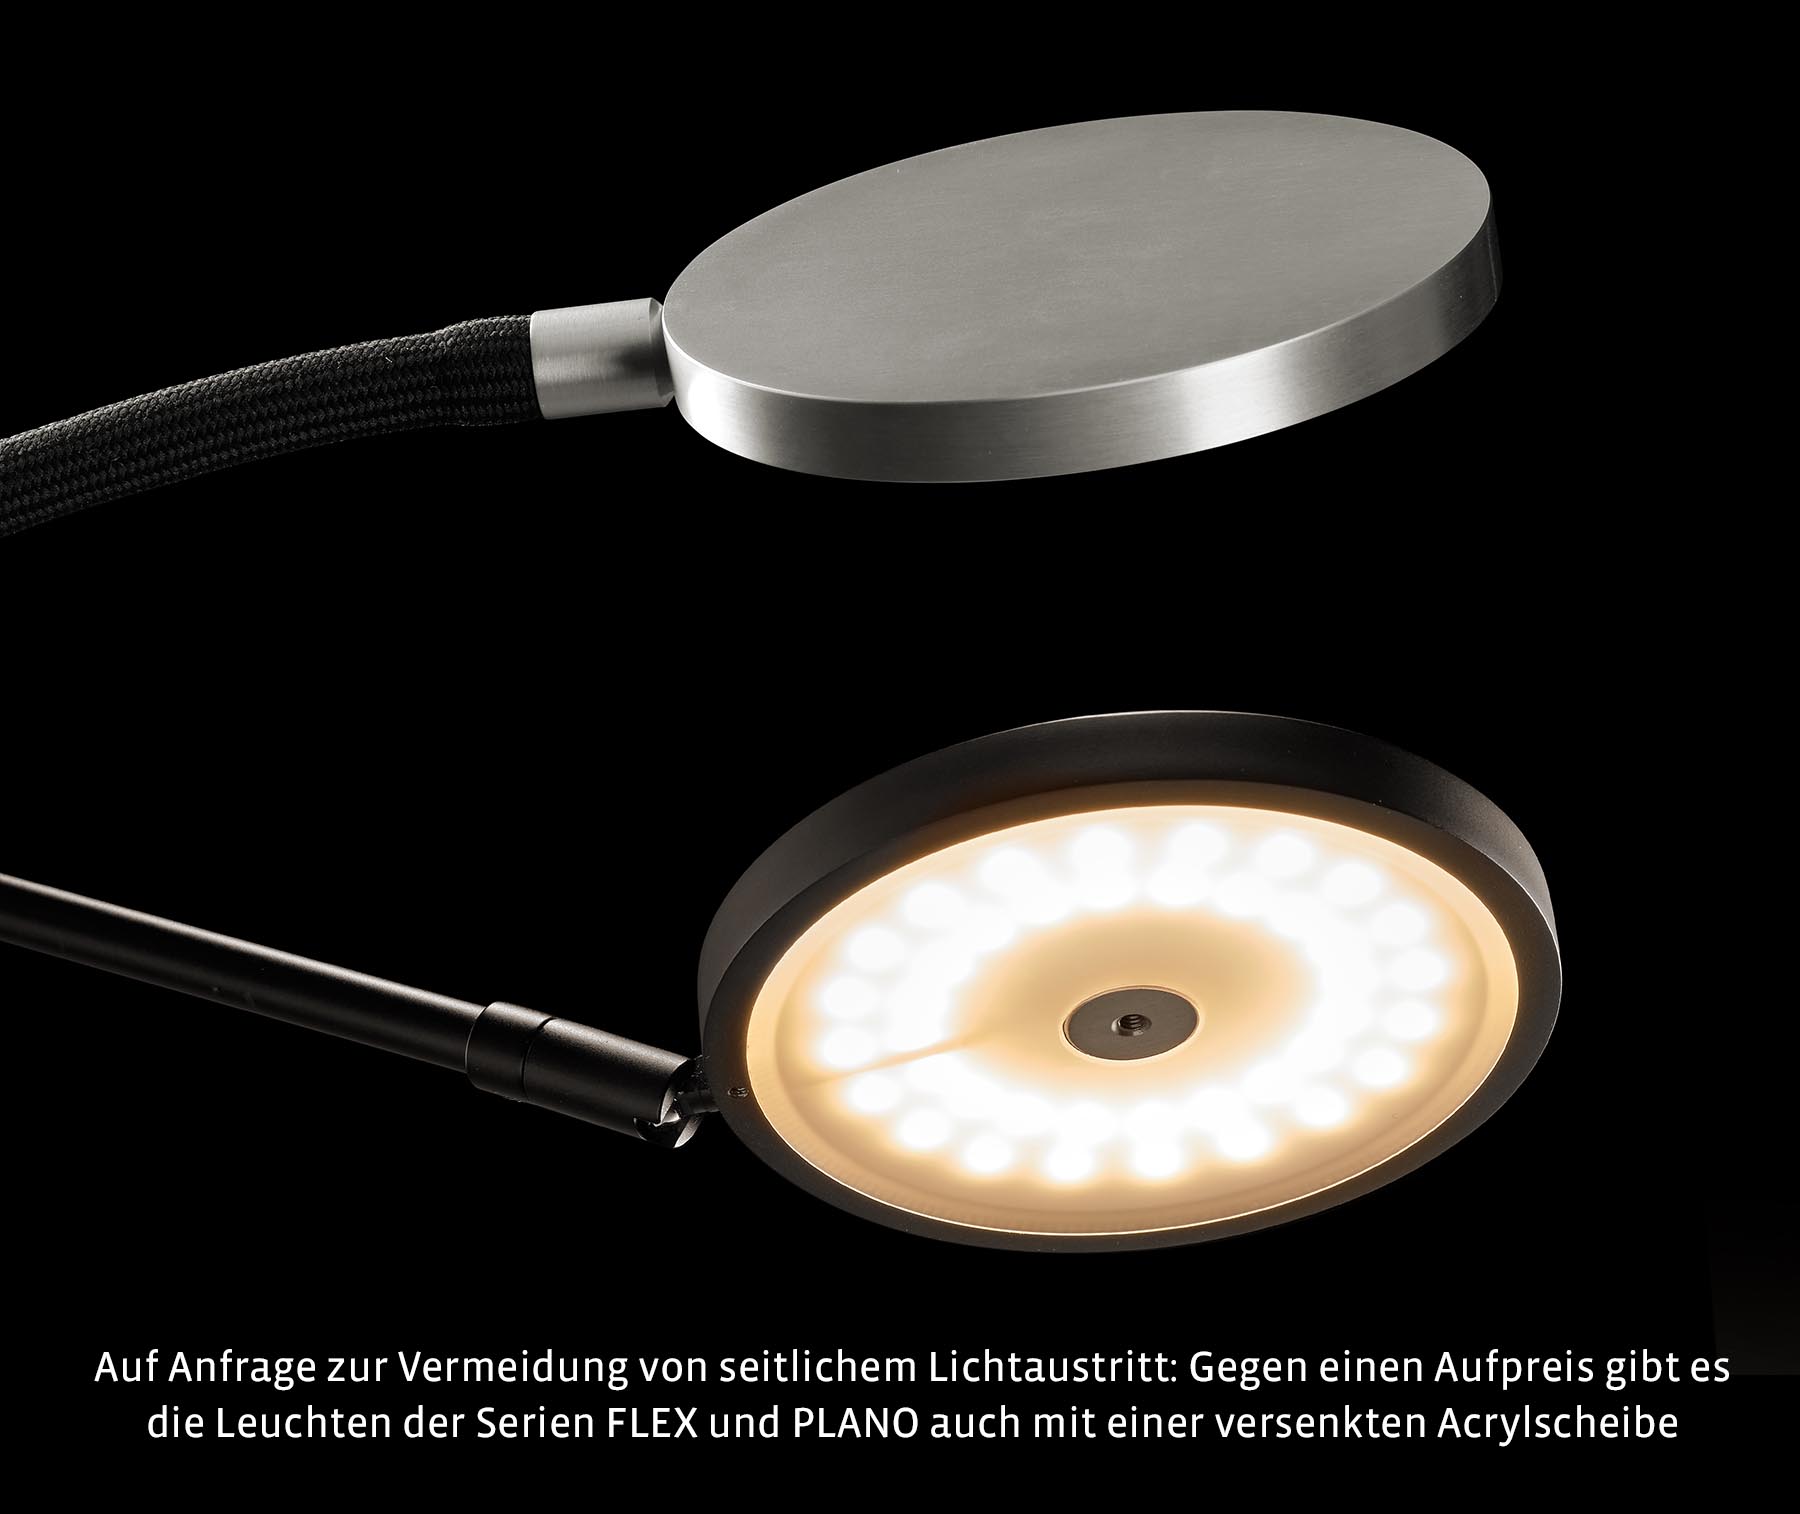 Doppel-Leseleuchte PLANO TWIN mit dimmbaren High End-LED: Zur Vermeidung von seitlichem Lichtaustritt: Die alternative Diffusor-Acrylscheibe